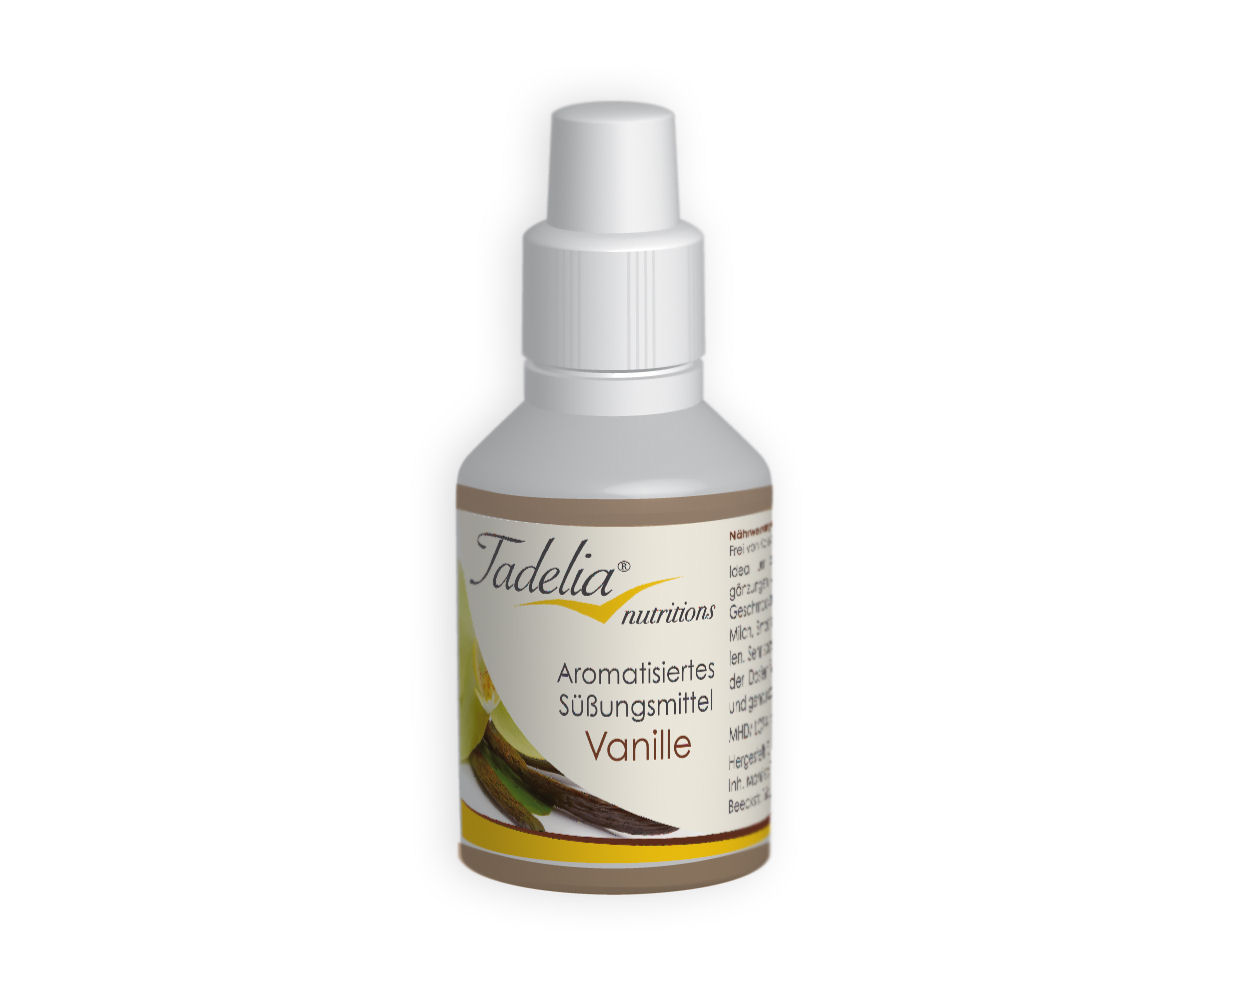 Tadelia® Aromatisiertes Süßungsmittel - Vanille 30 ml